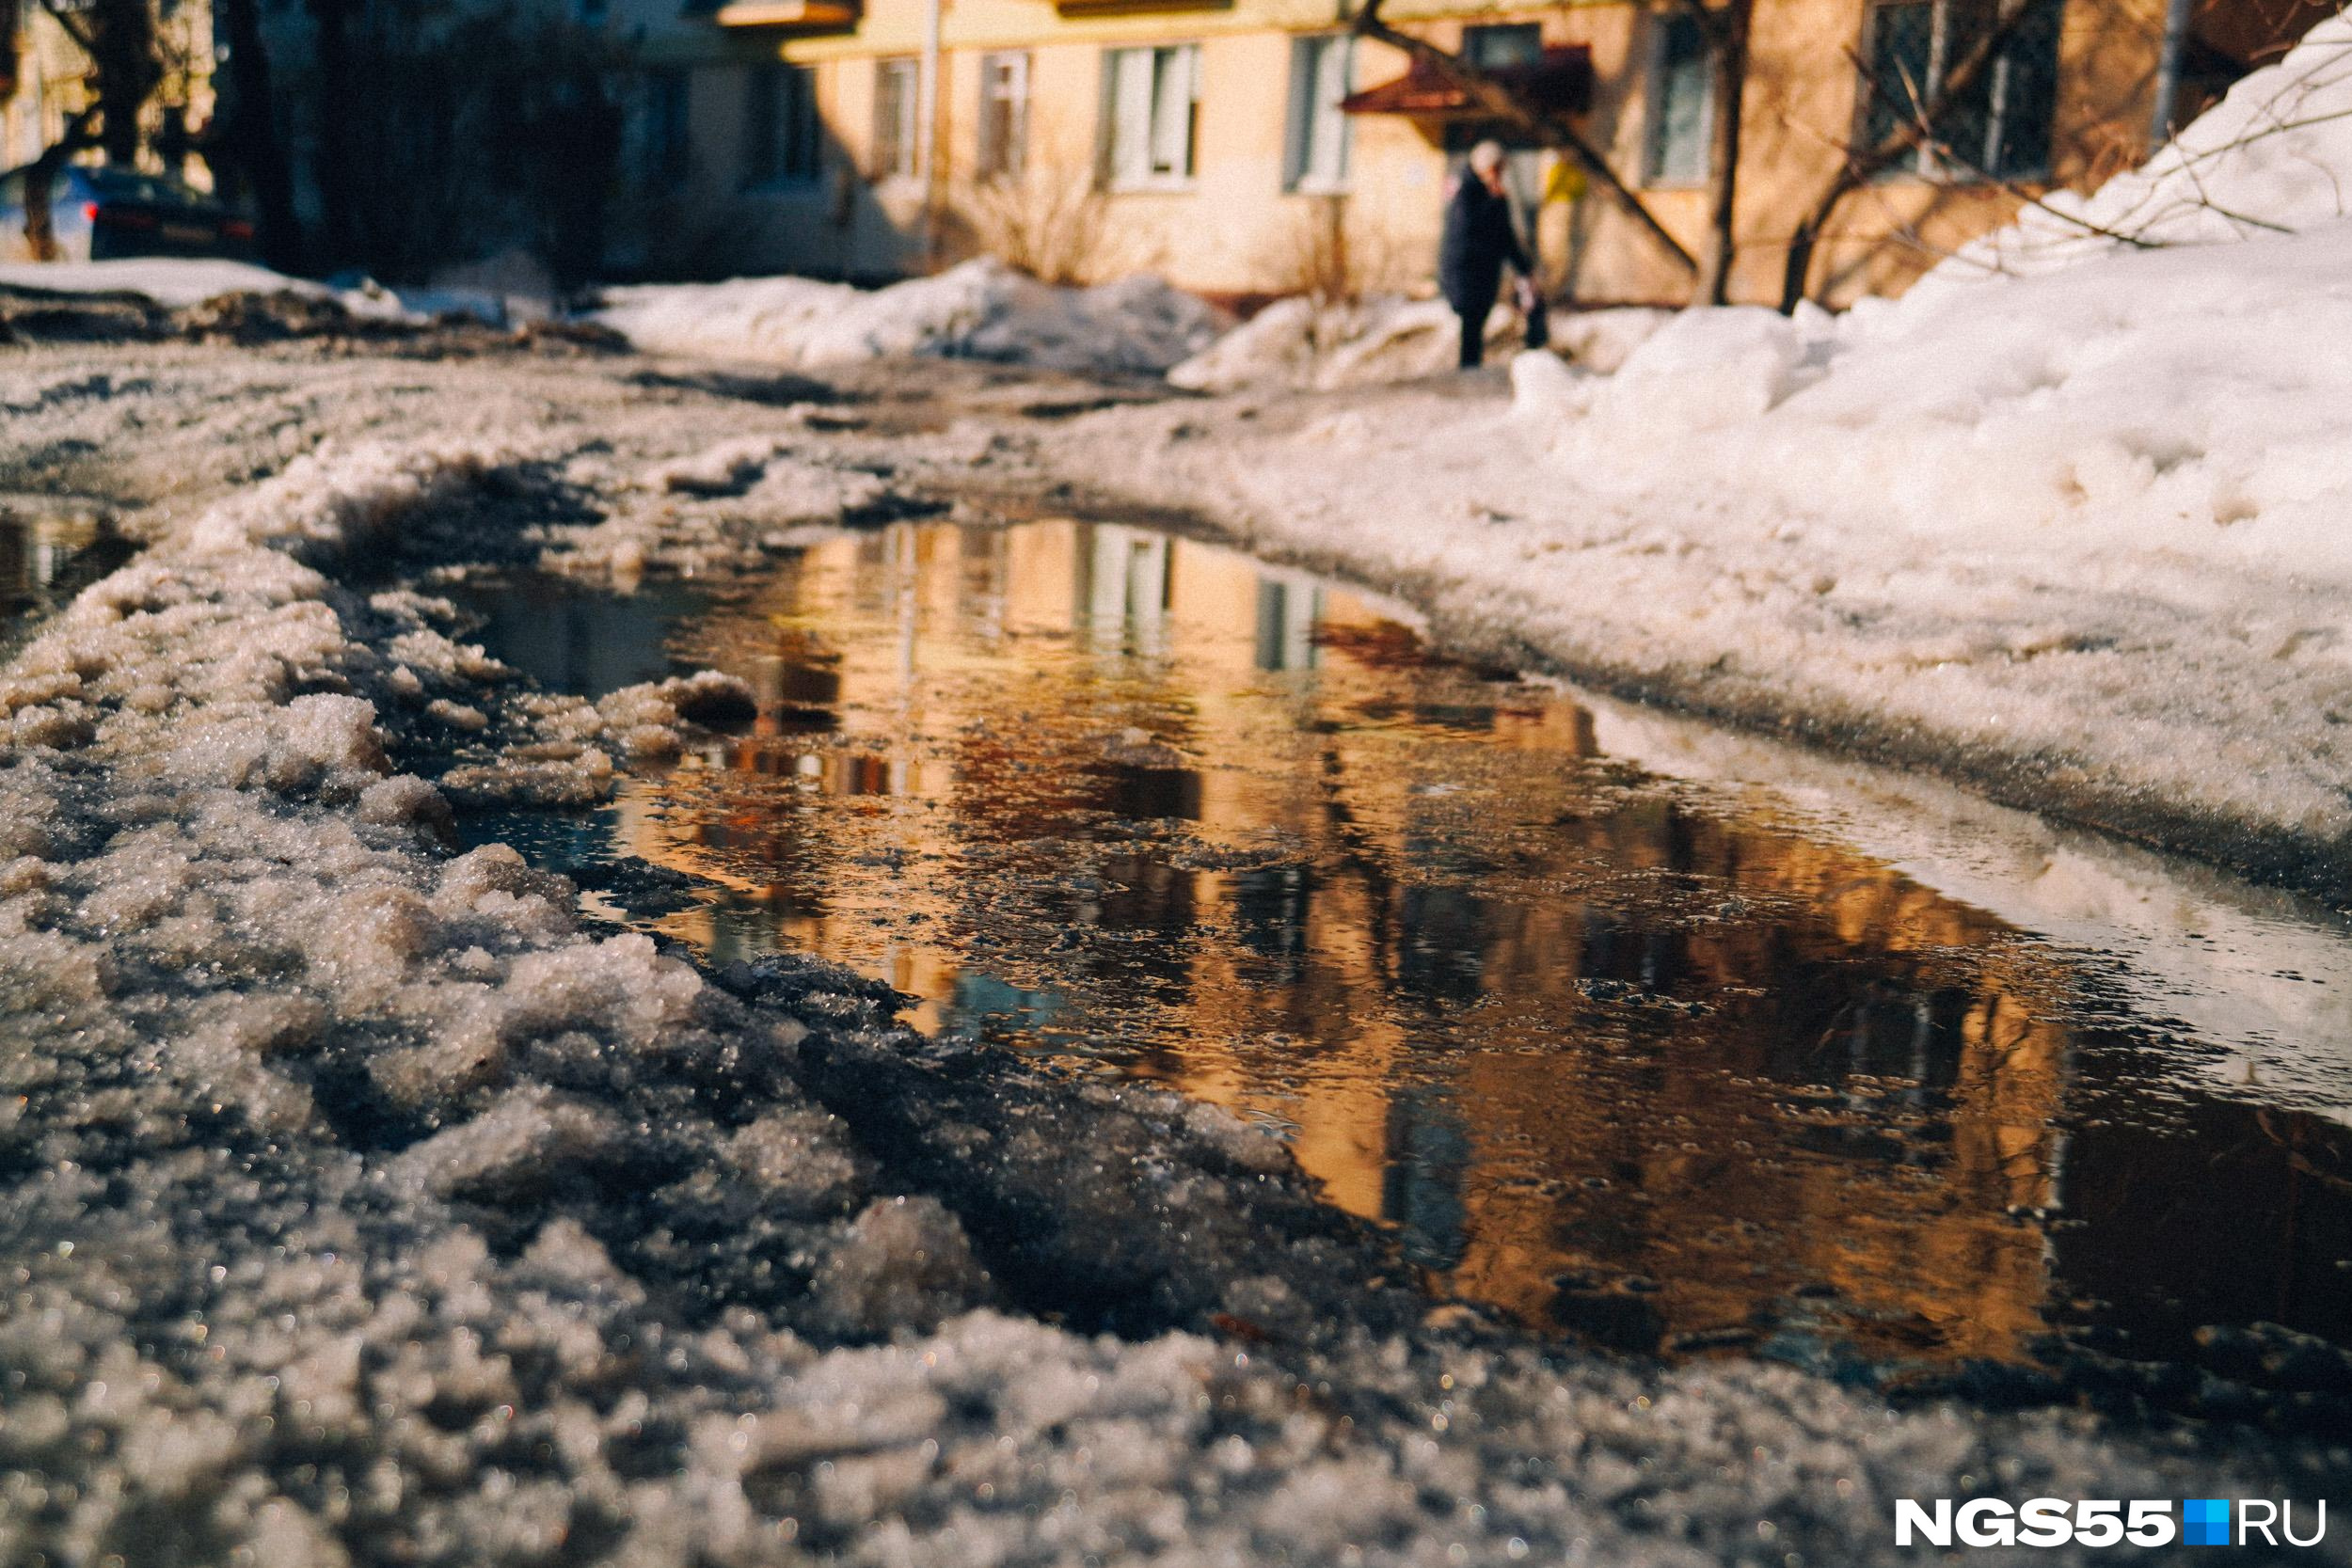 Дождь, мокрый снег и +18: какие сюрпризы готовит погода жителям Кузбасса